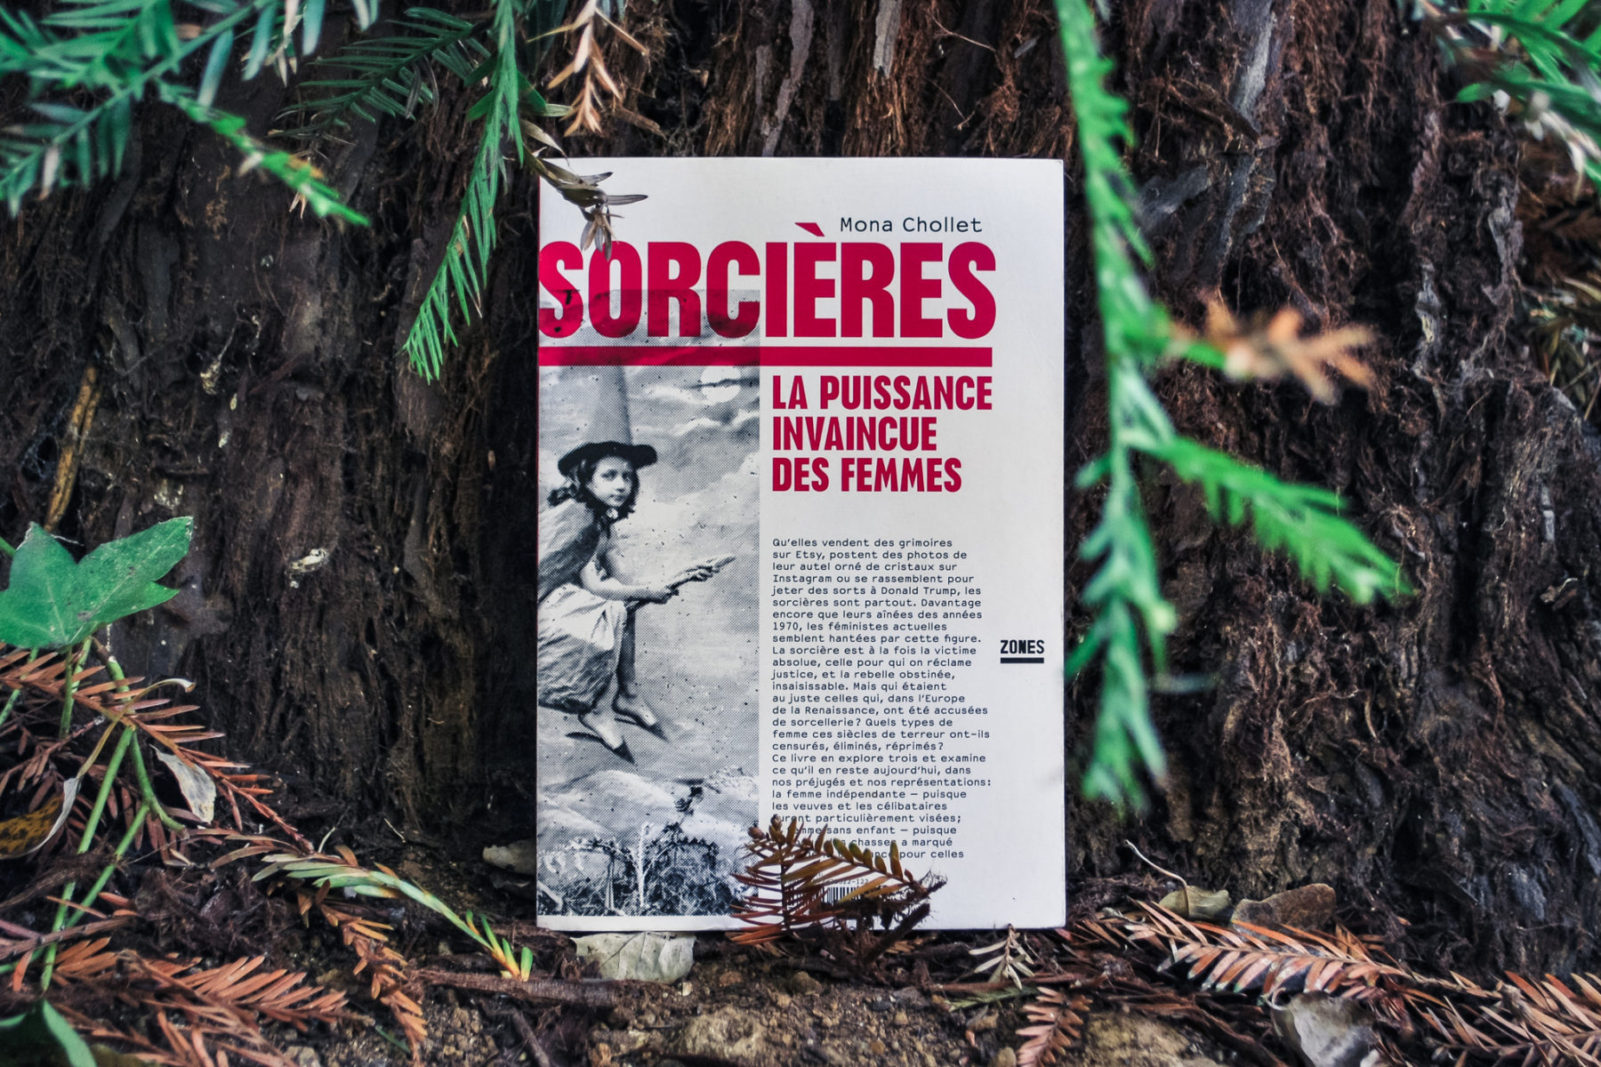 Sorcières  by Mona Chollet